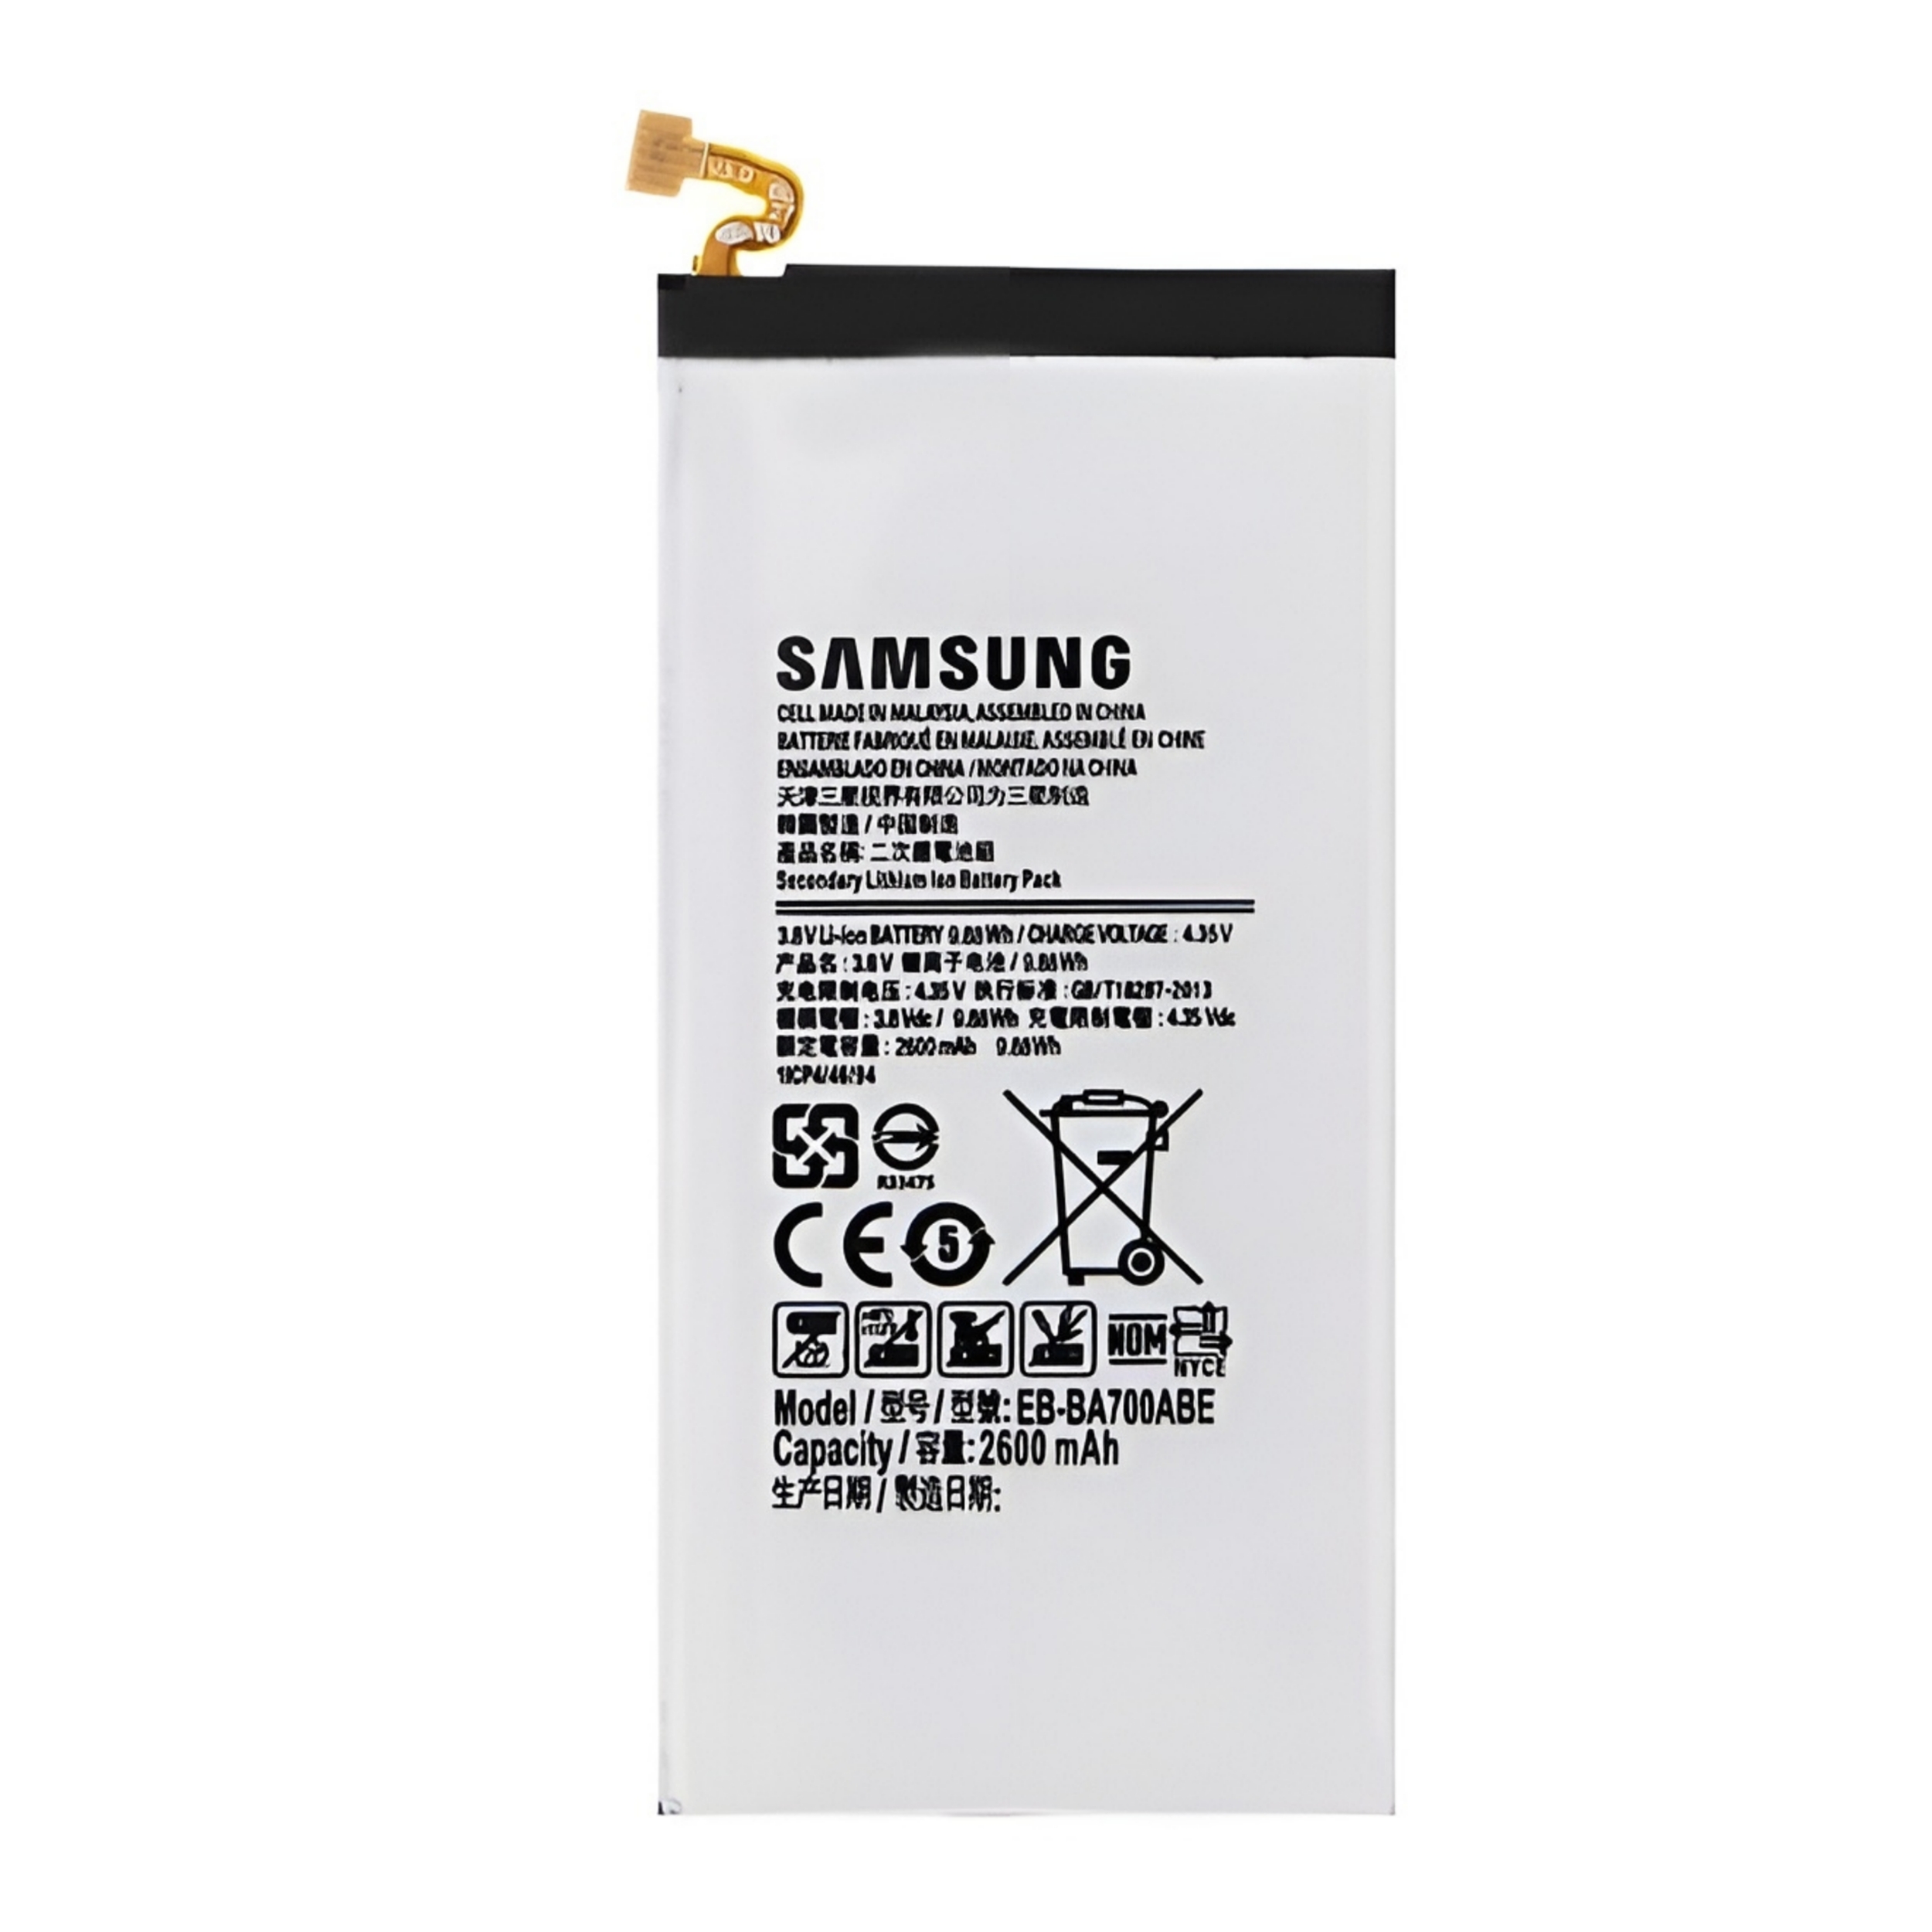 باتری مدل EB-BA300AE ظرفیت 1900 میلی امپر ساعت مناسب برای گوشی موبایل سامسونگ galaxy A300 / A3 2015